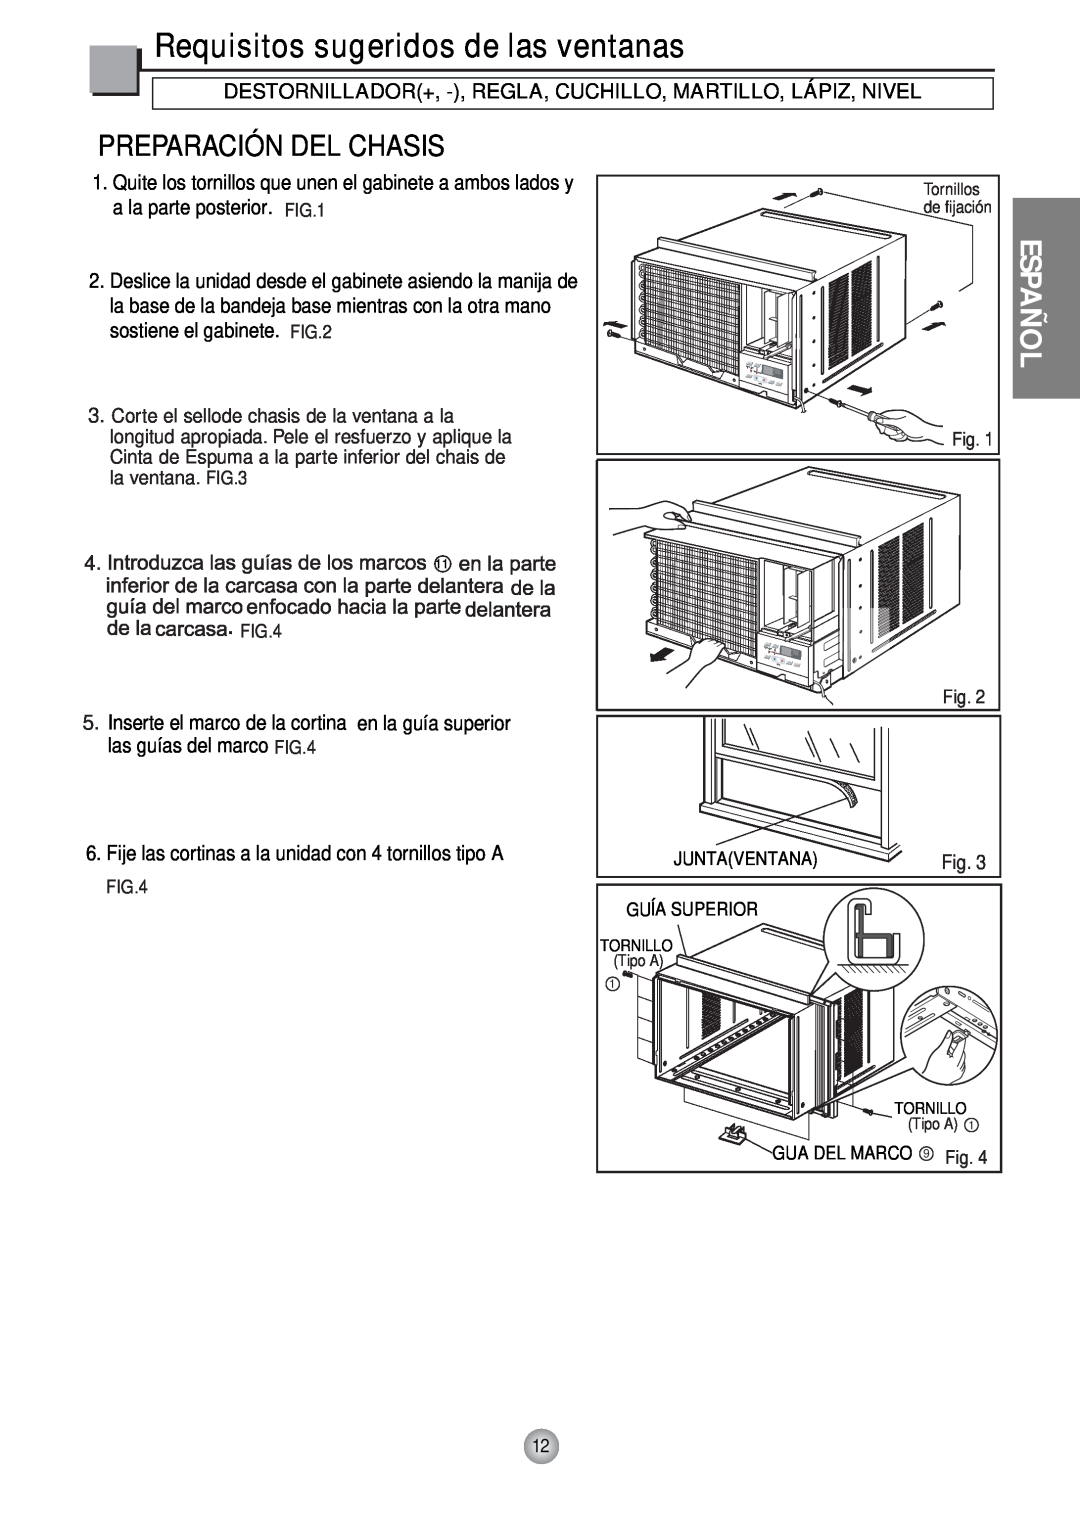 Friedrich CP12, CP10 manual Requisitos sugeridos de las ventanas, Español, Preparación Del Chasis 